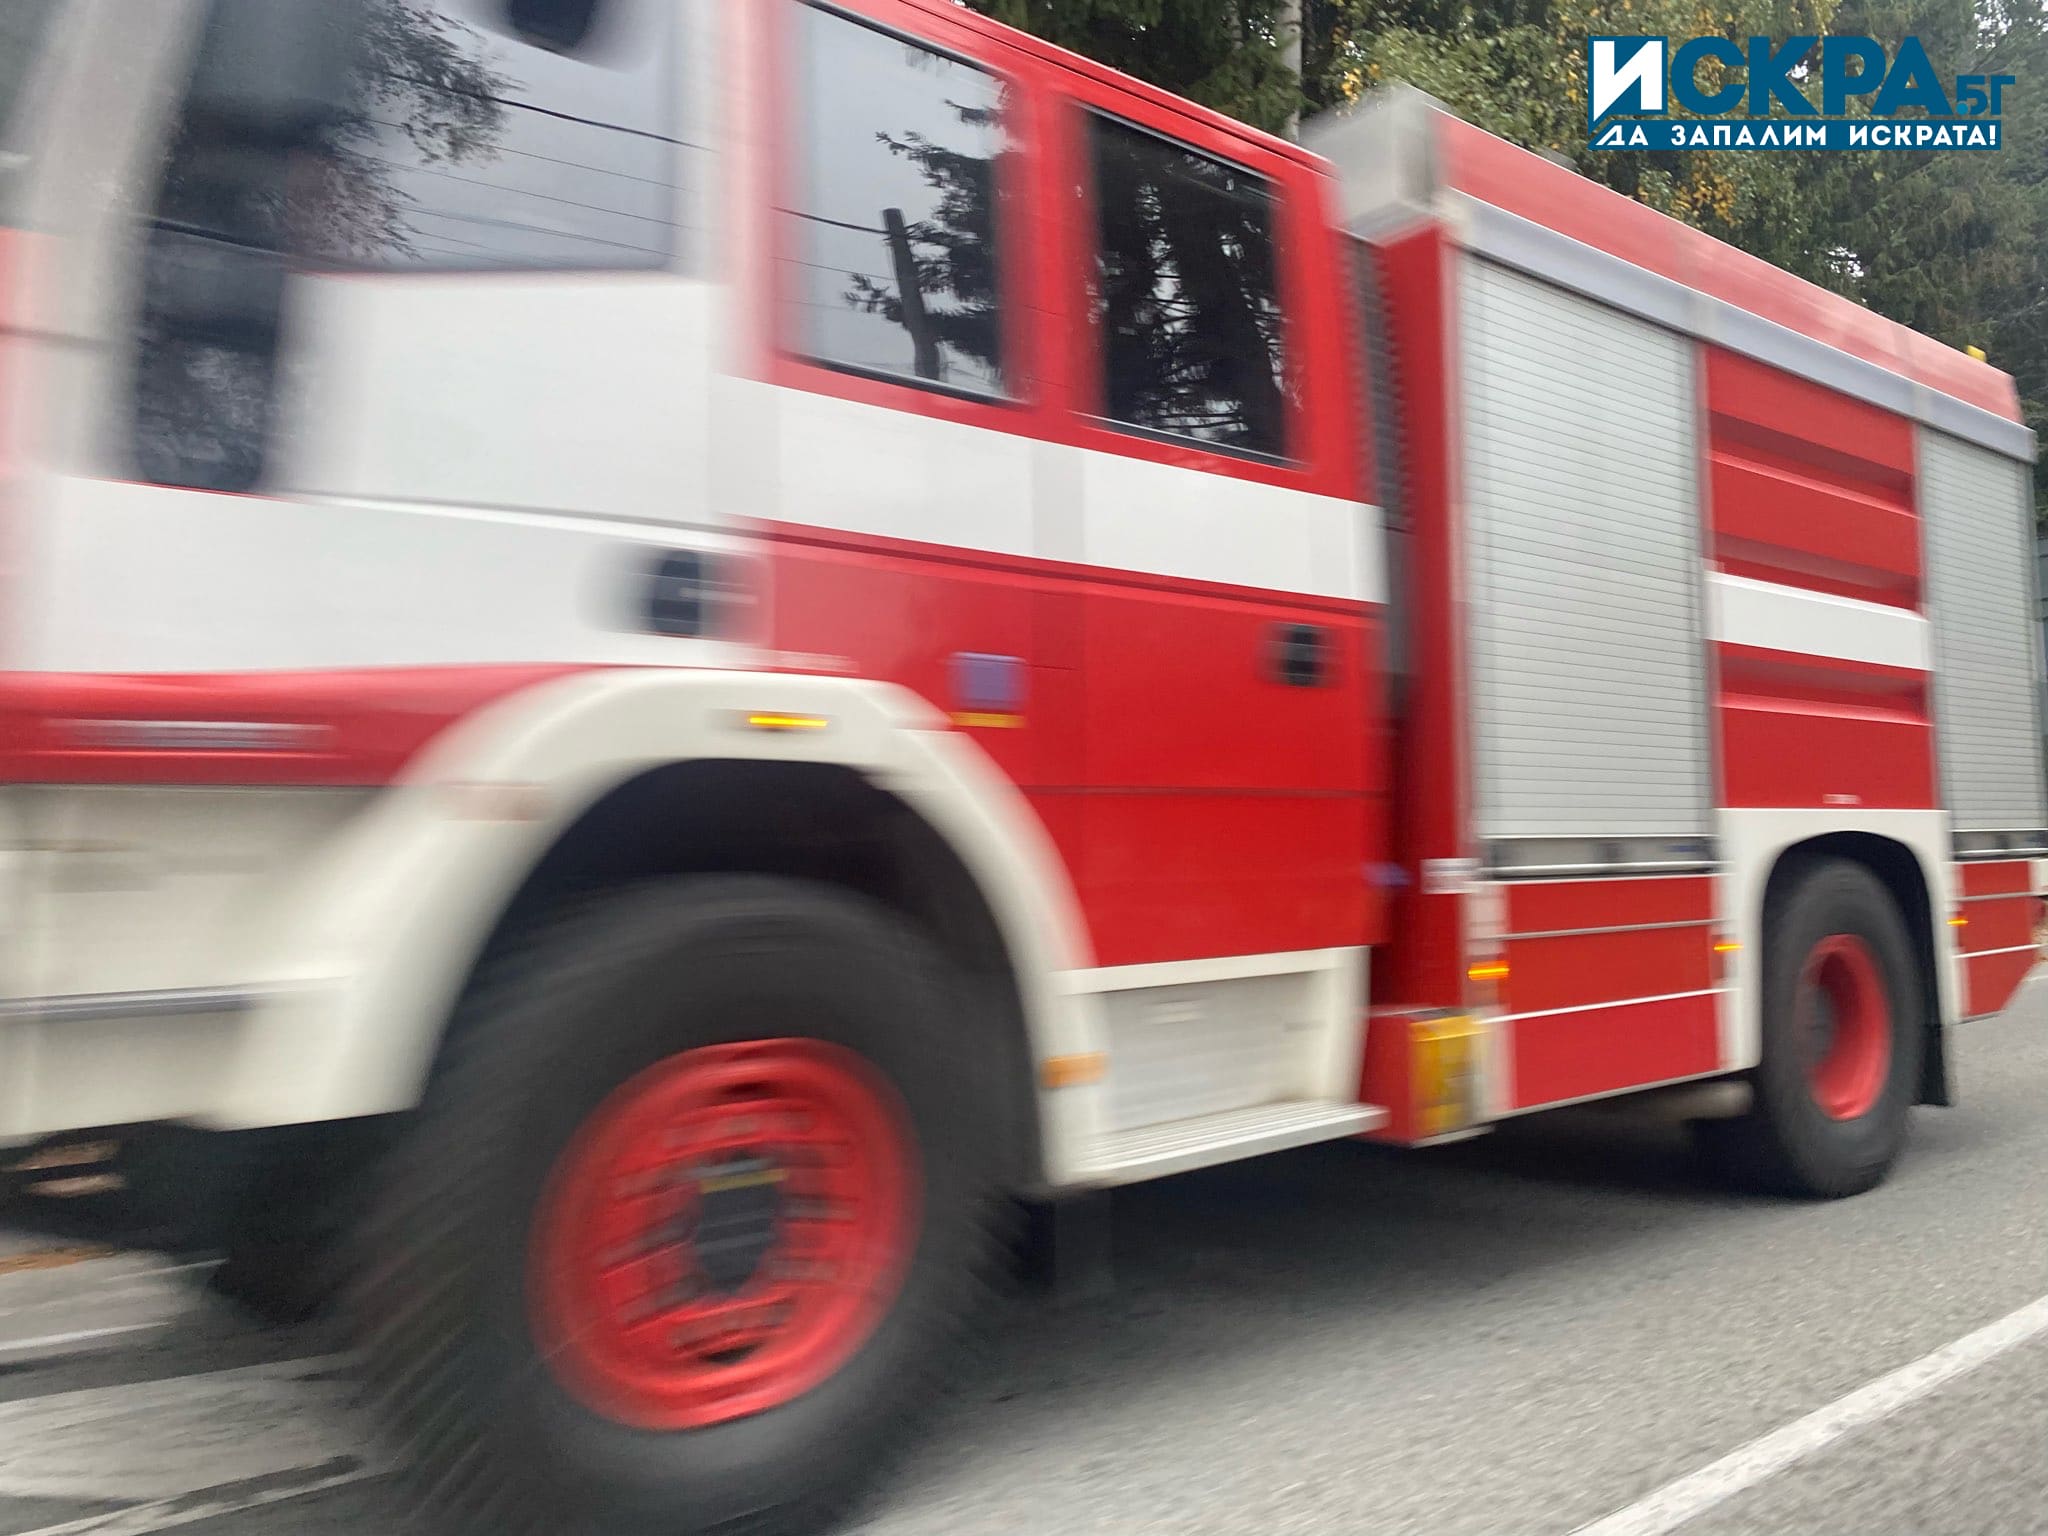 57 годишен мъж е тежко пострадал при огромен пожар във Варна